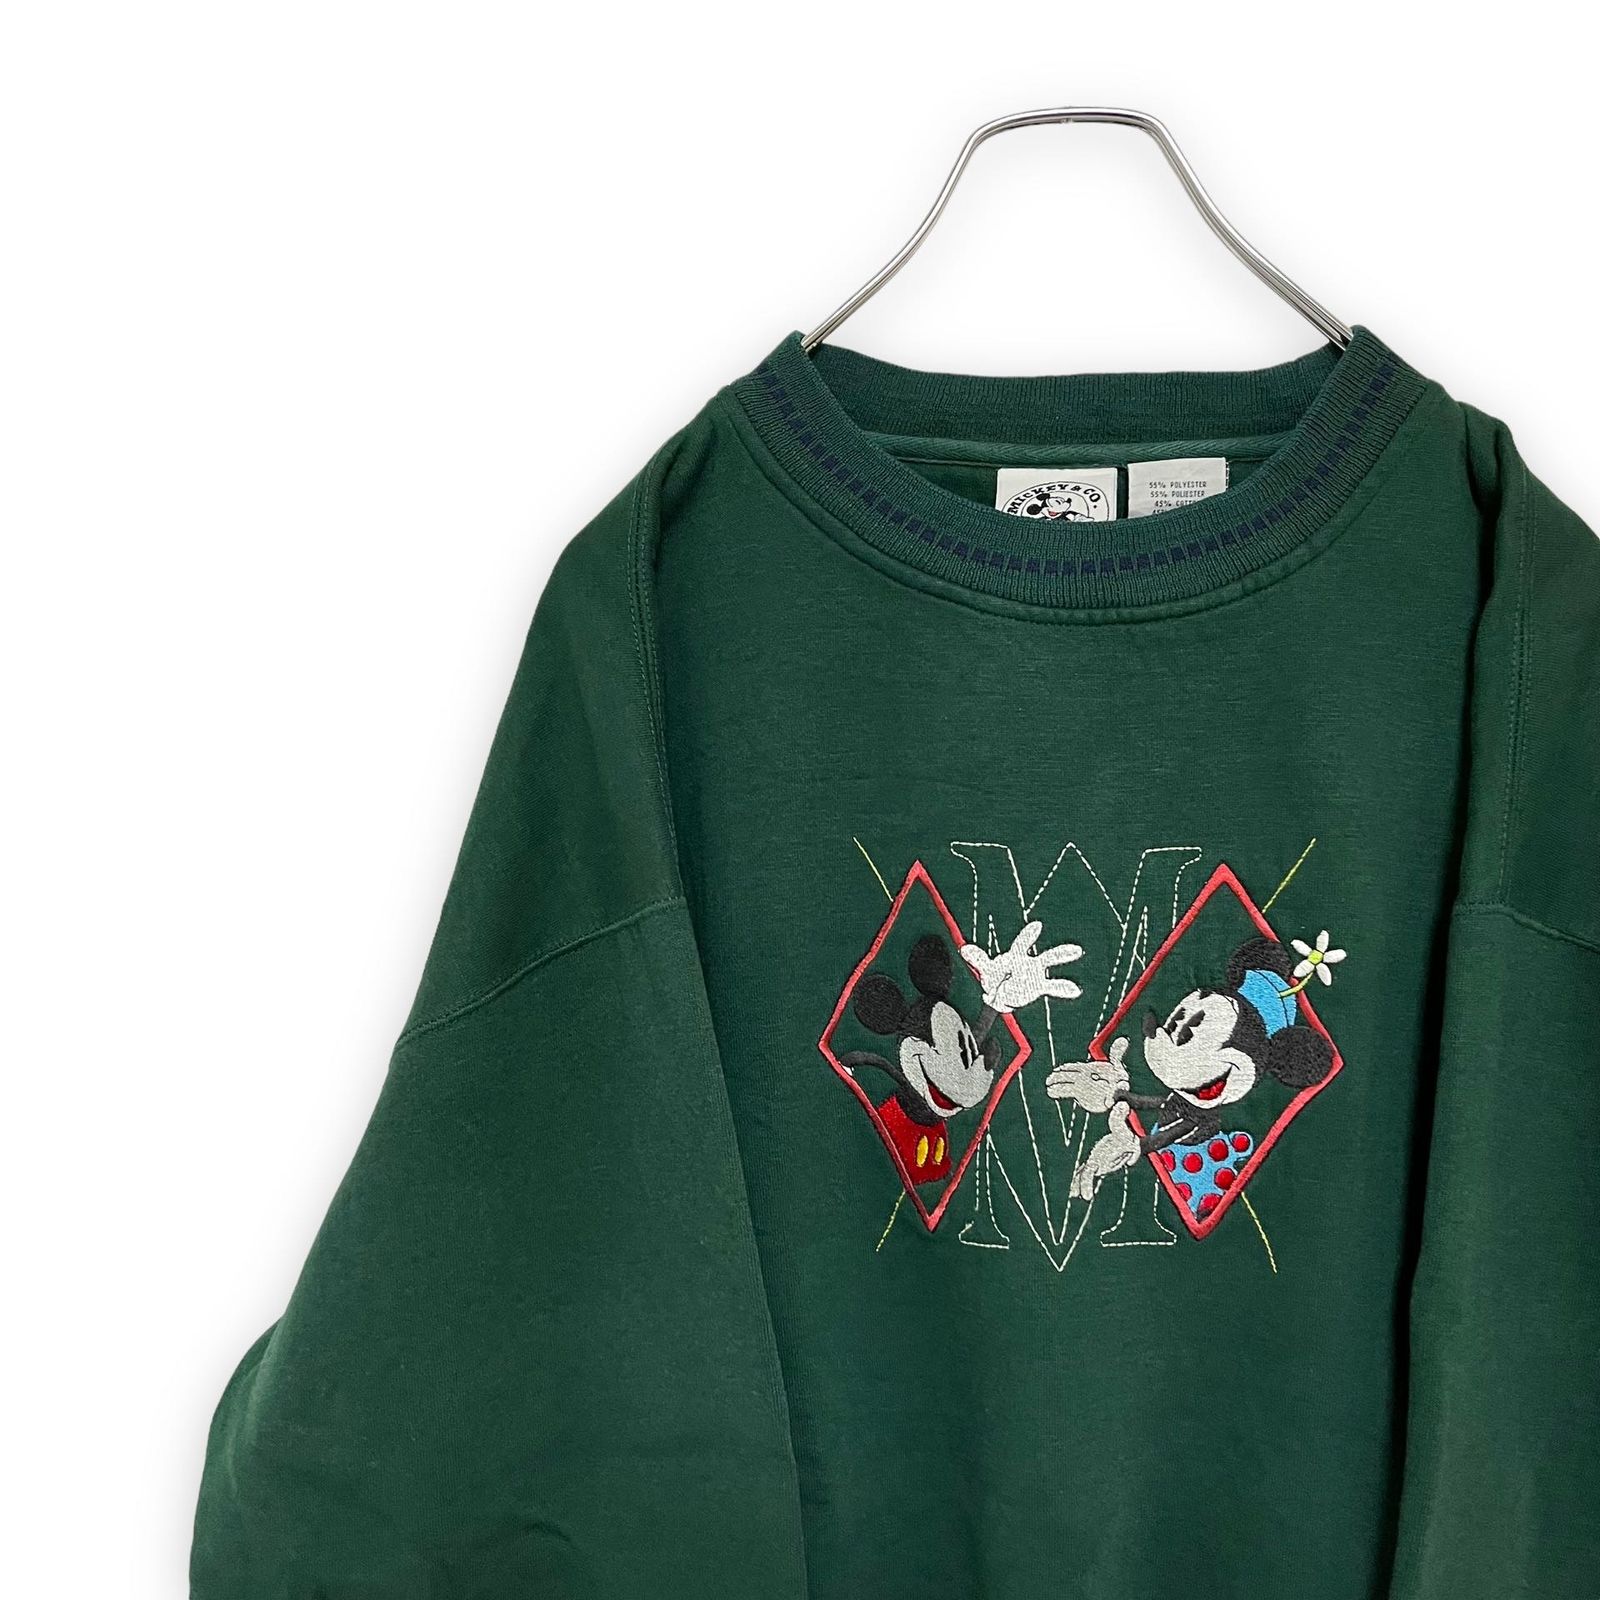 NEW得価 Disney - ミッキー 刺繍 スウェット トレーナー 緑色